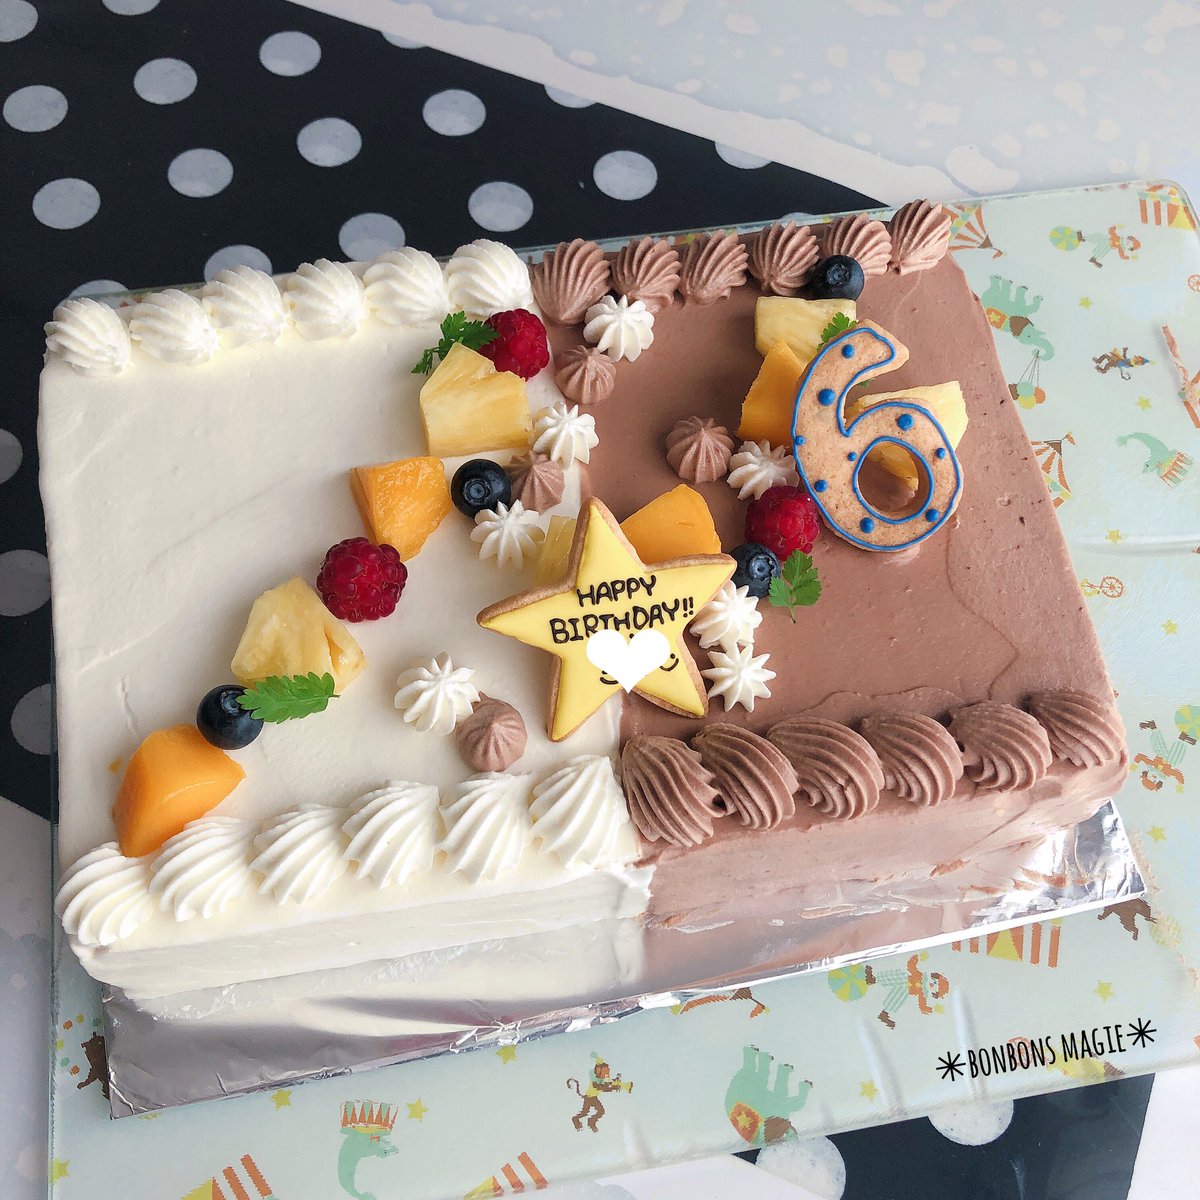 Hiｔomi ケーキ 自分たちの結婚記念日 と たのまれもののスプラトゥーン 大きいサイズでハーフ ハーフ 四角のナッペが久々で だいぶ手こずった 手作りケーキ デコレーションケーキ 誕生日ケーキ スプラトゥーン キャラケーキ 結婚記念日